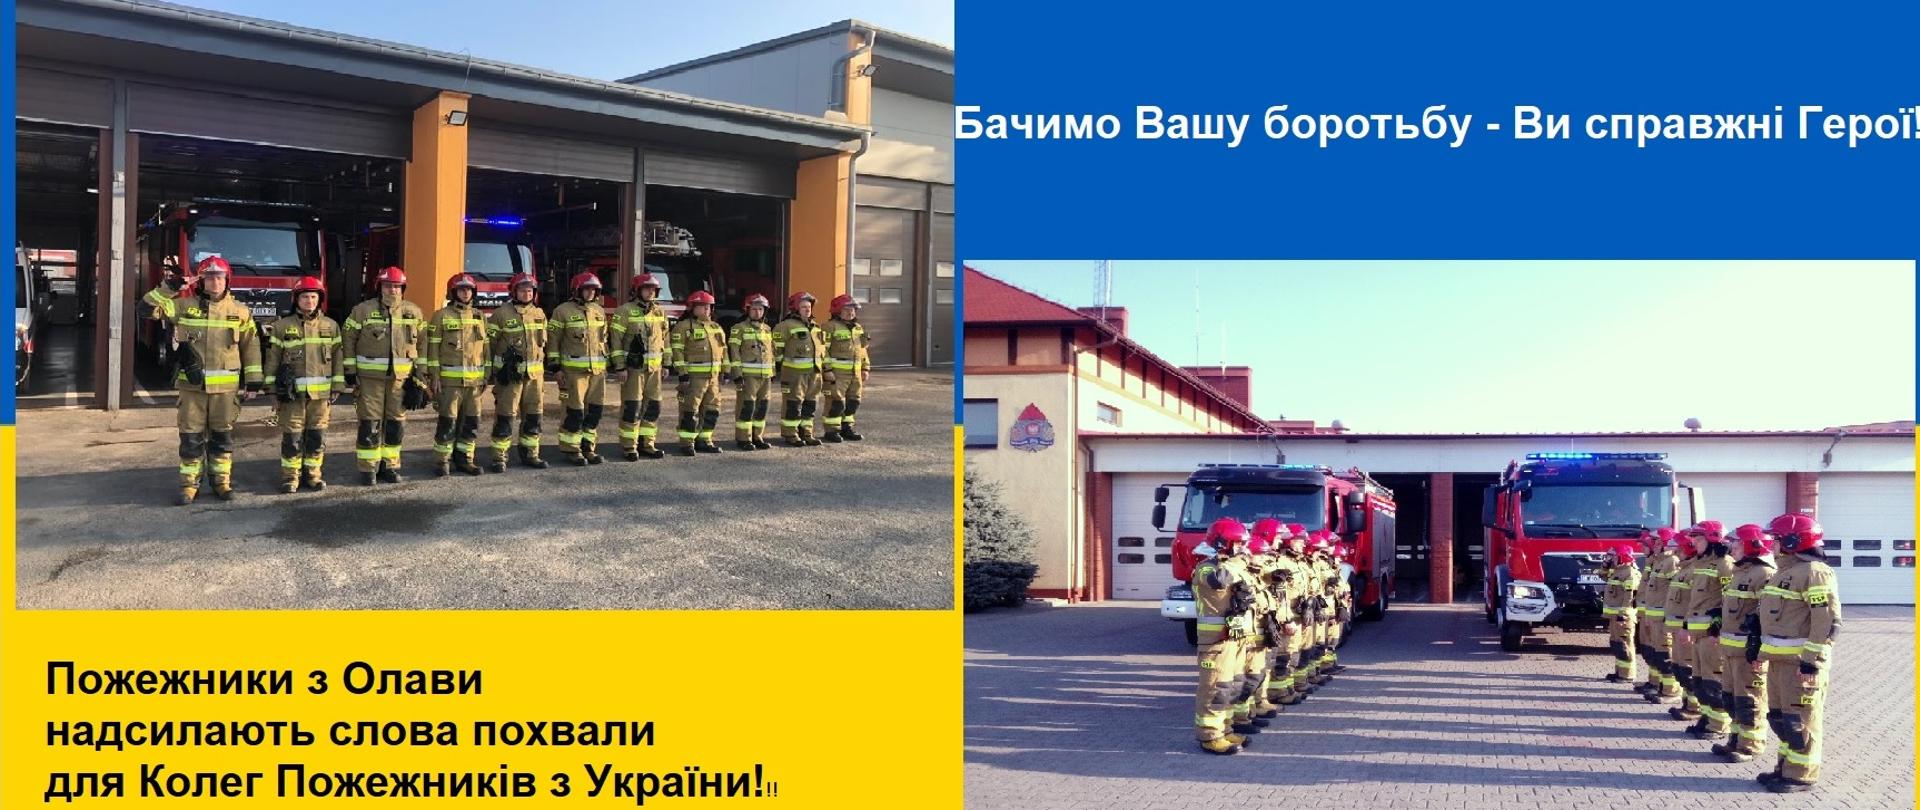 Dwa zdjęcia - strażacy w bojowych mundurach, przed samochodami, oddają honor strażakom z Ukrainy, którzy zginęli podczas działań ratowniczych w czasie wojny